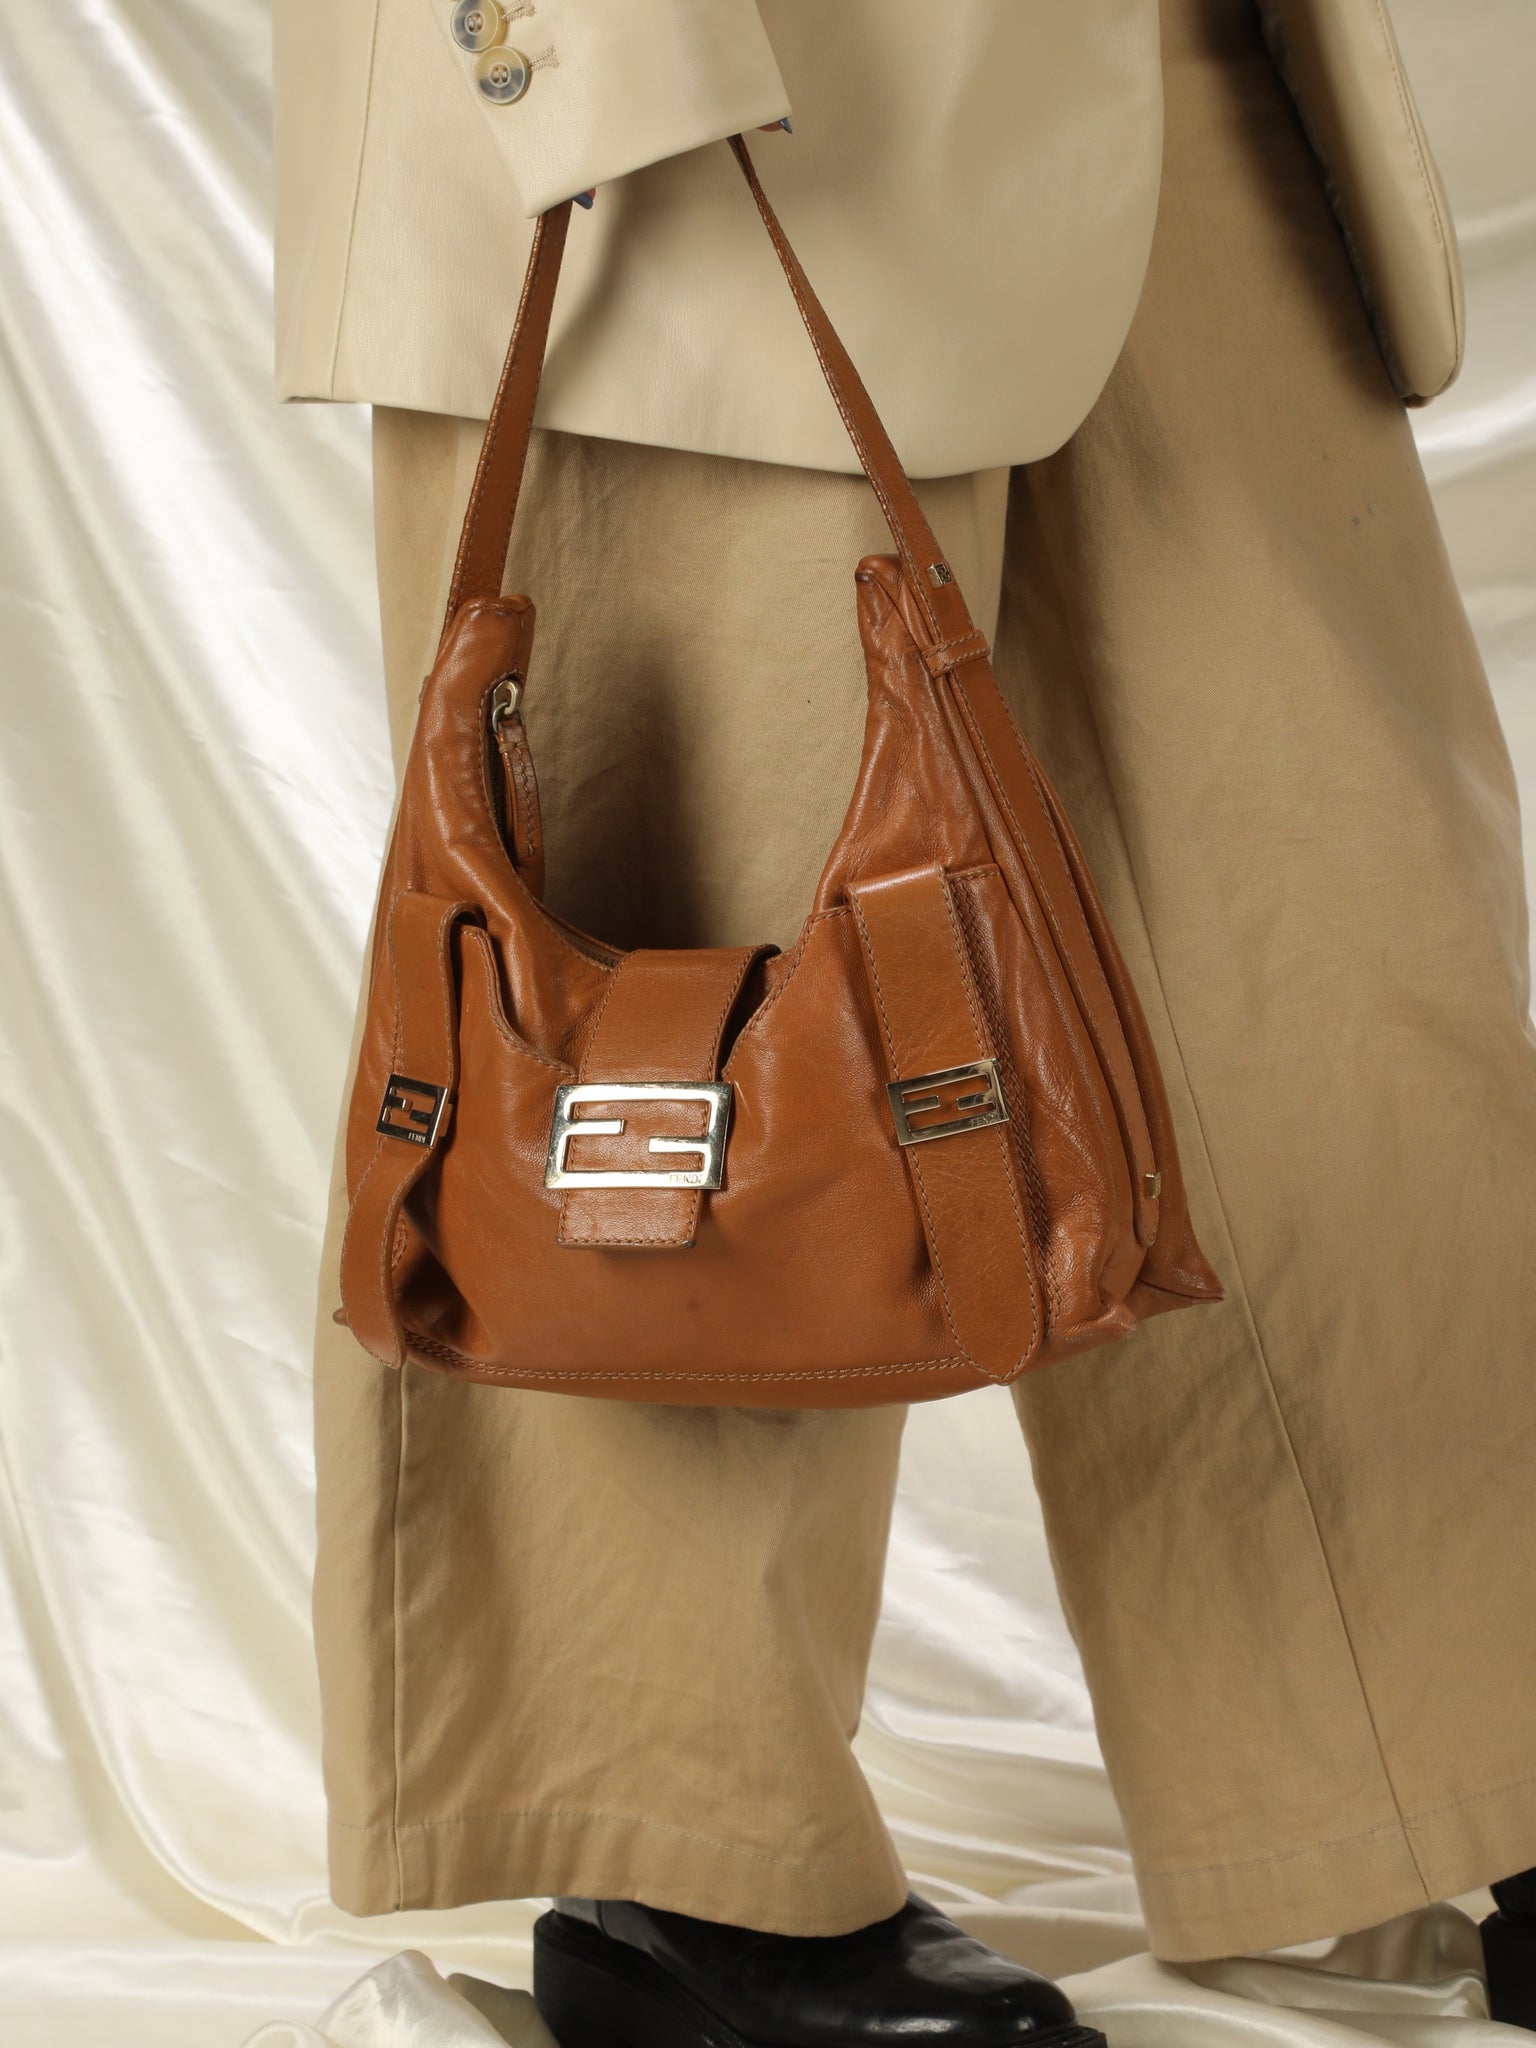 Fendi Leather Hobo Bag